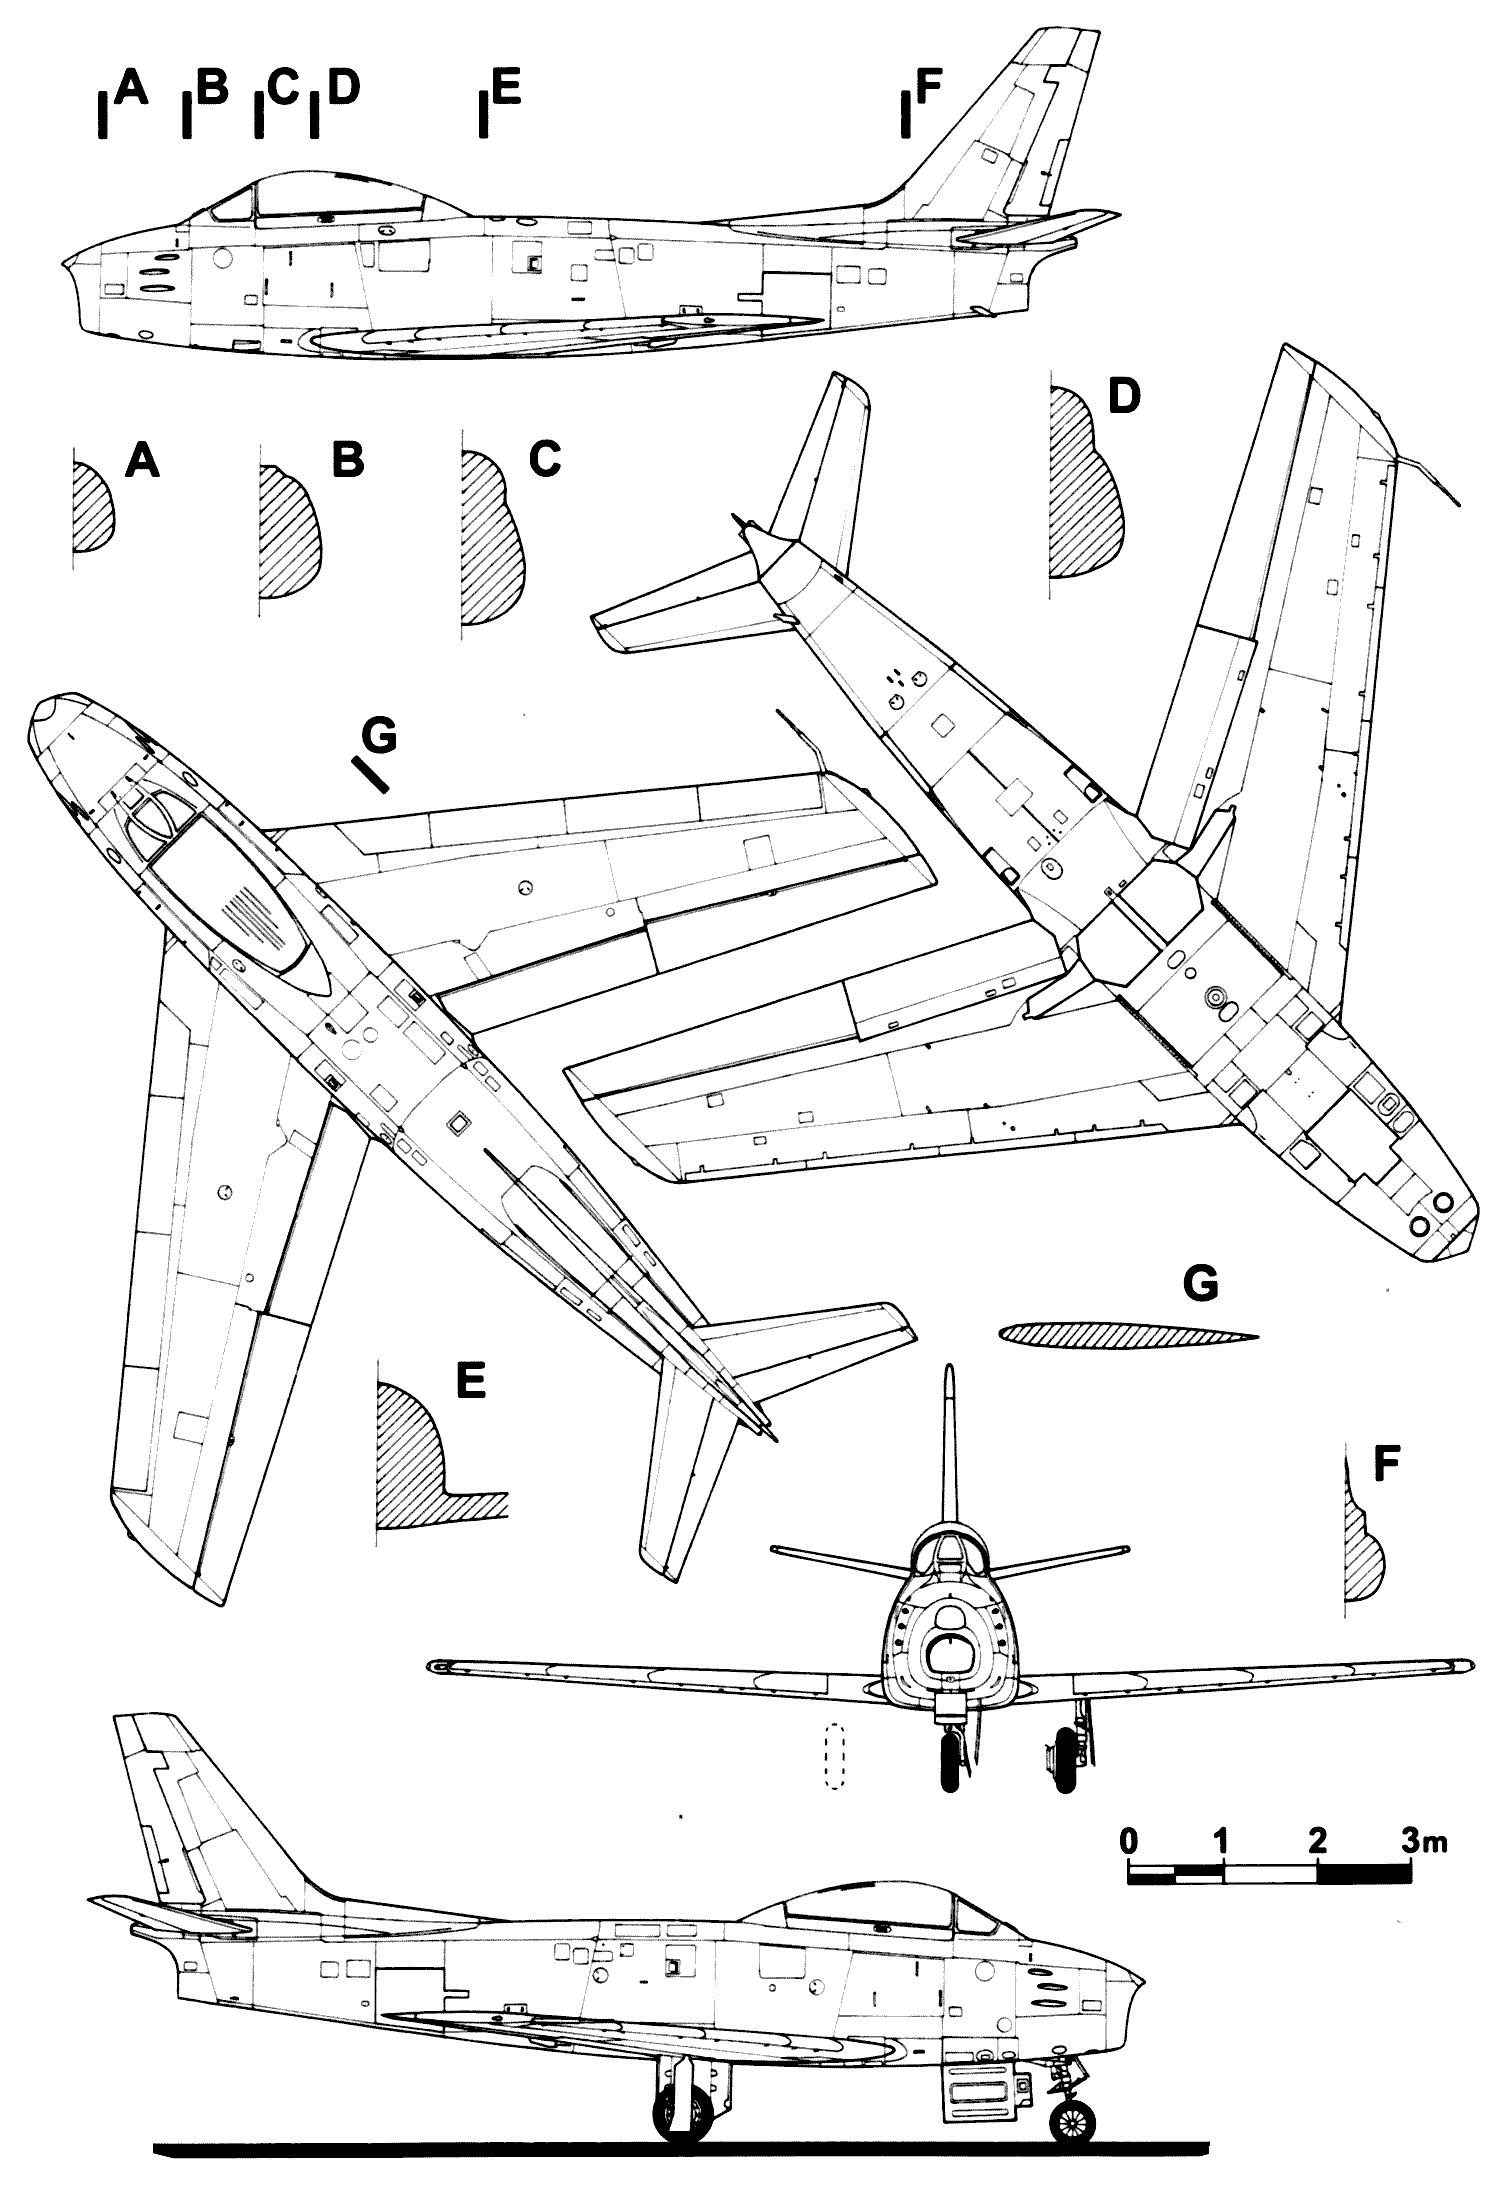 CL-13 Sabre blueprint